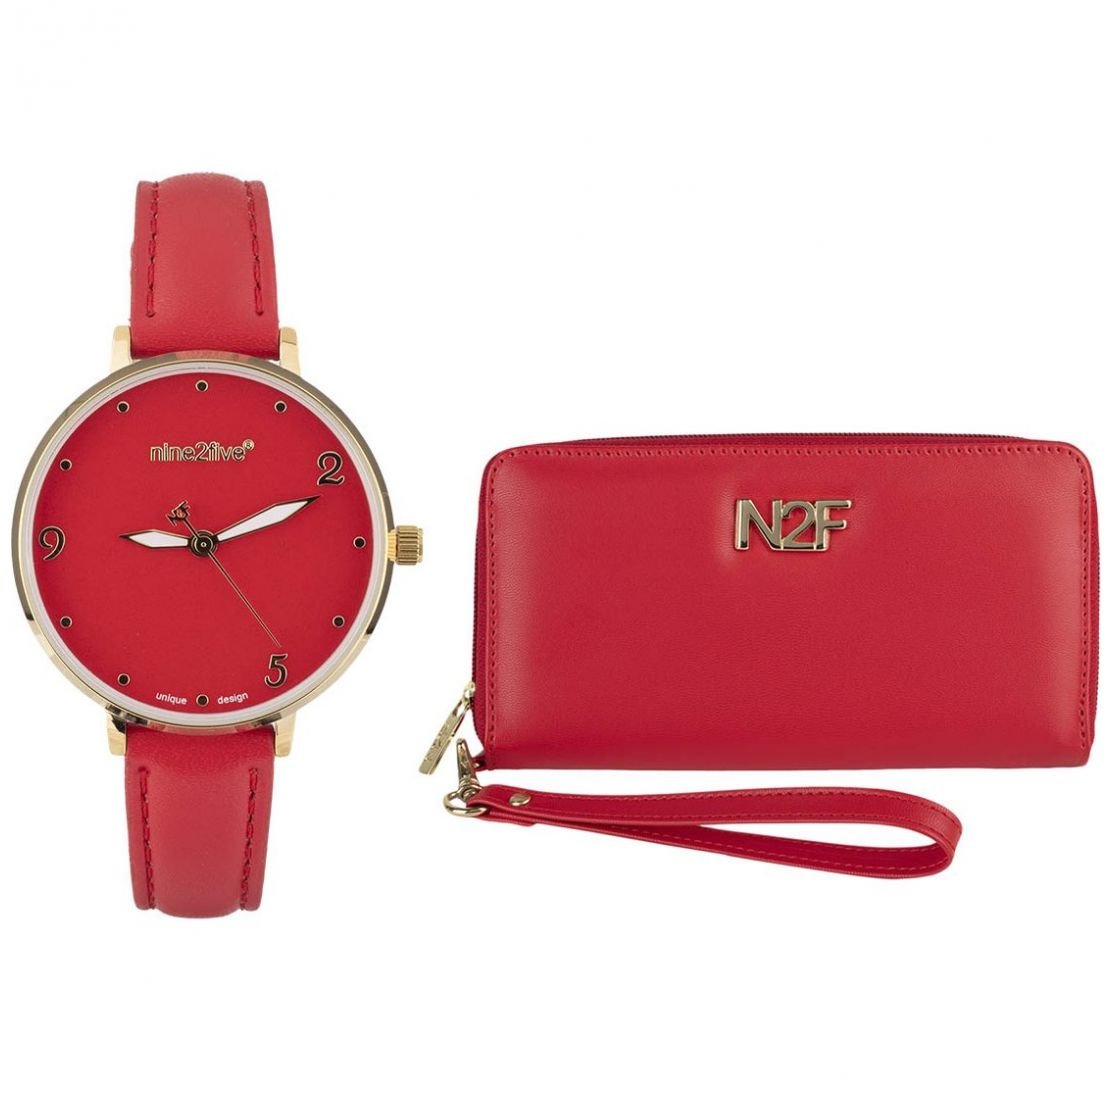 Set de regalo para mujer con reloj, monedero y cable\nKit de regalo  femenino con accesorios esencial